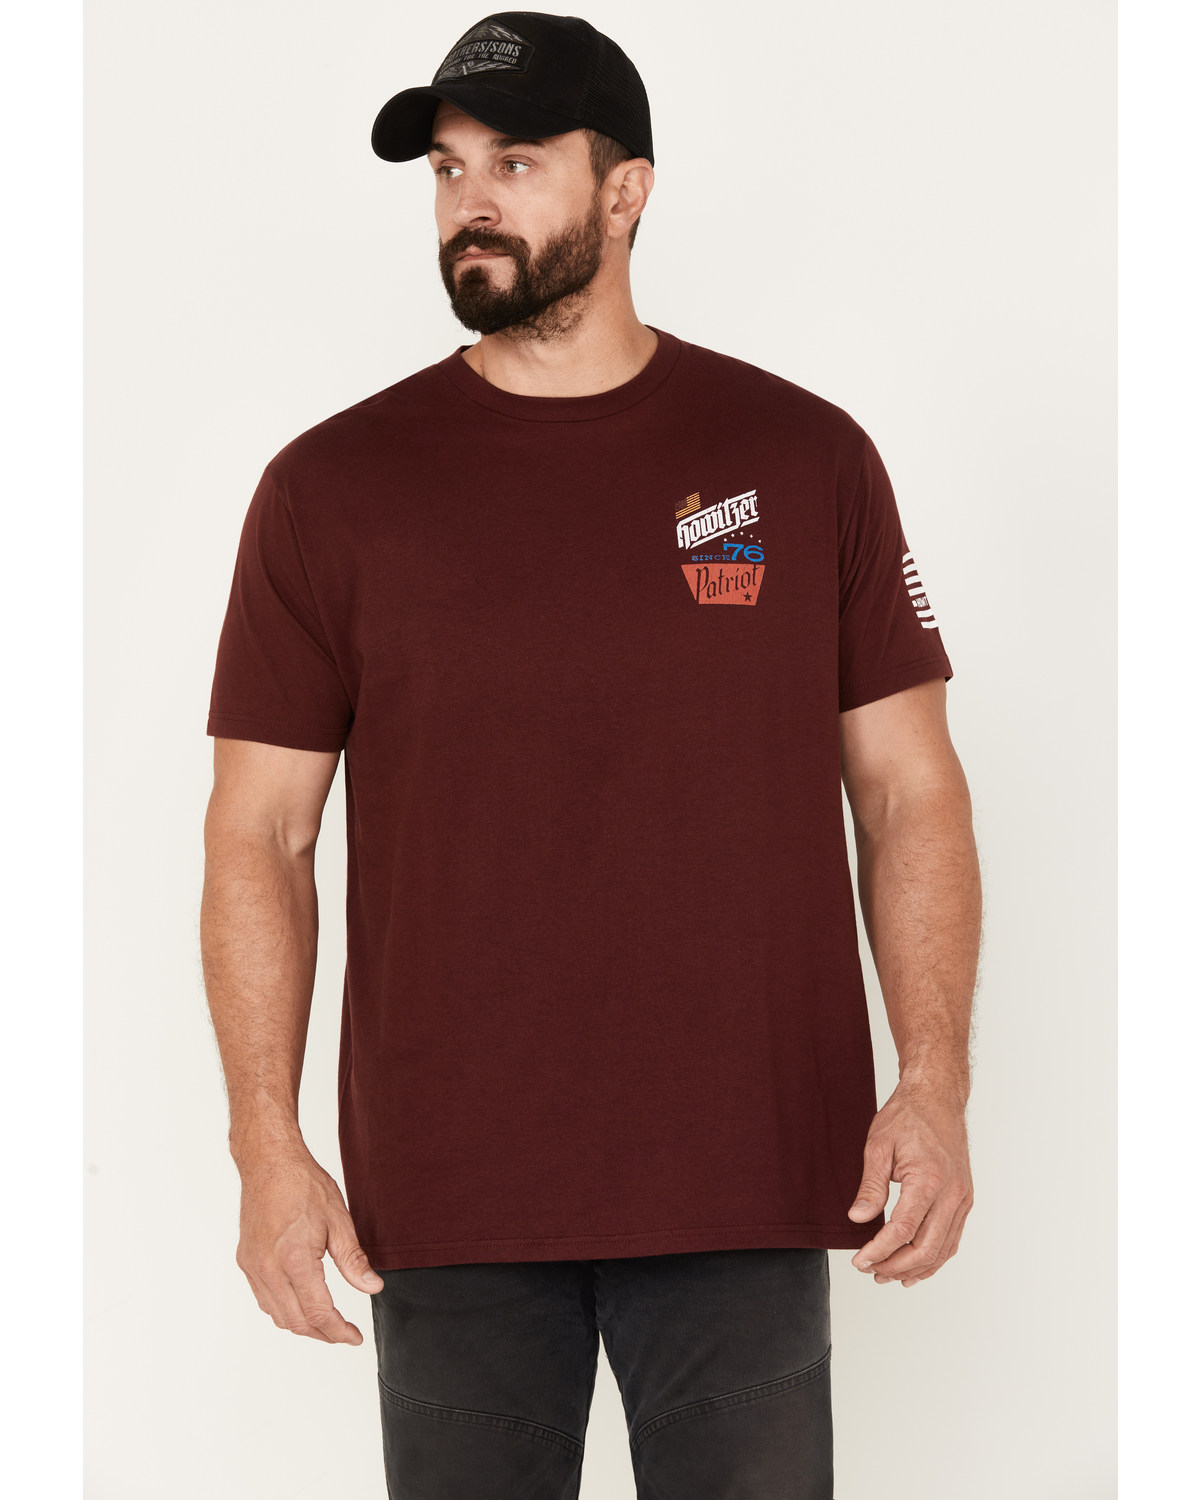 Howitzer Men's Beer Badge Short Sleeve Graphic T-Shirt